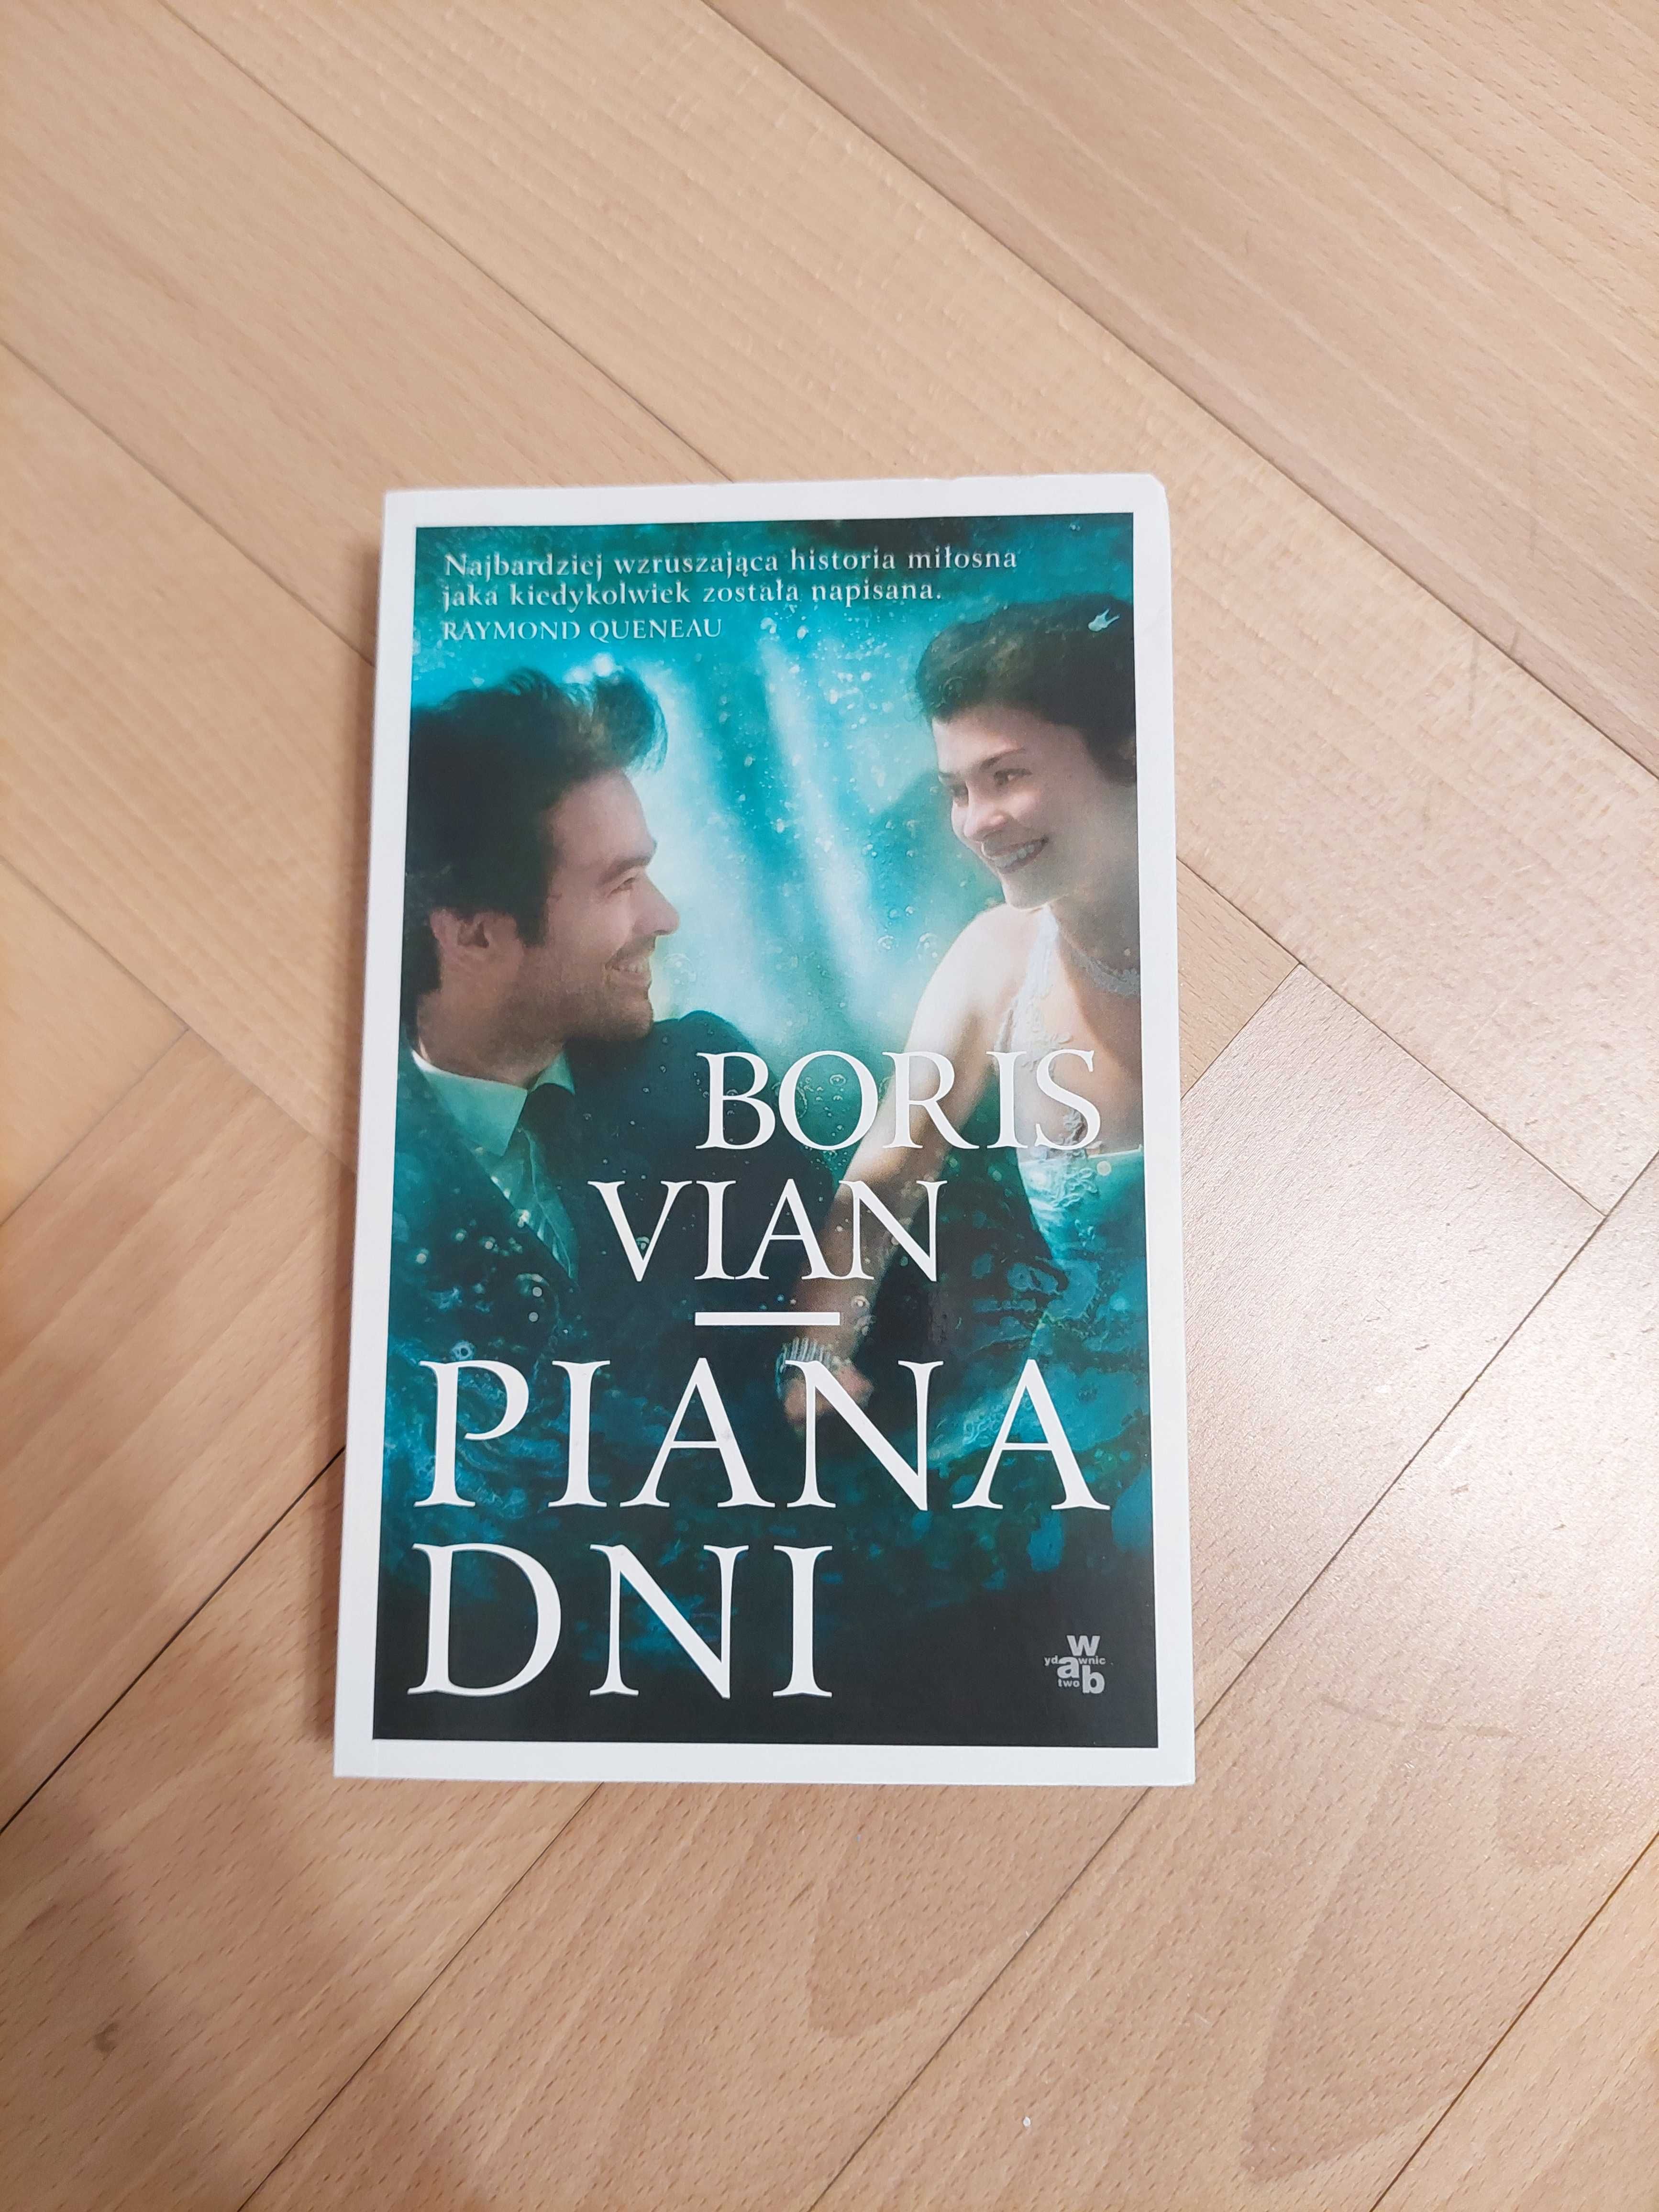 Książka "Piana Dni" Boris Vian